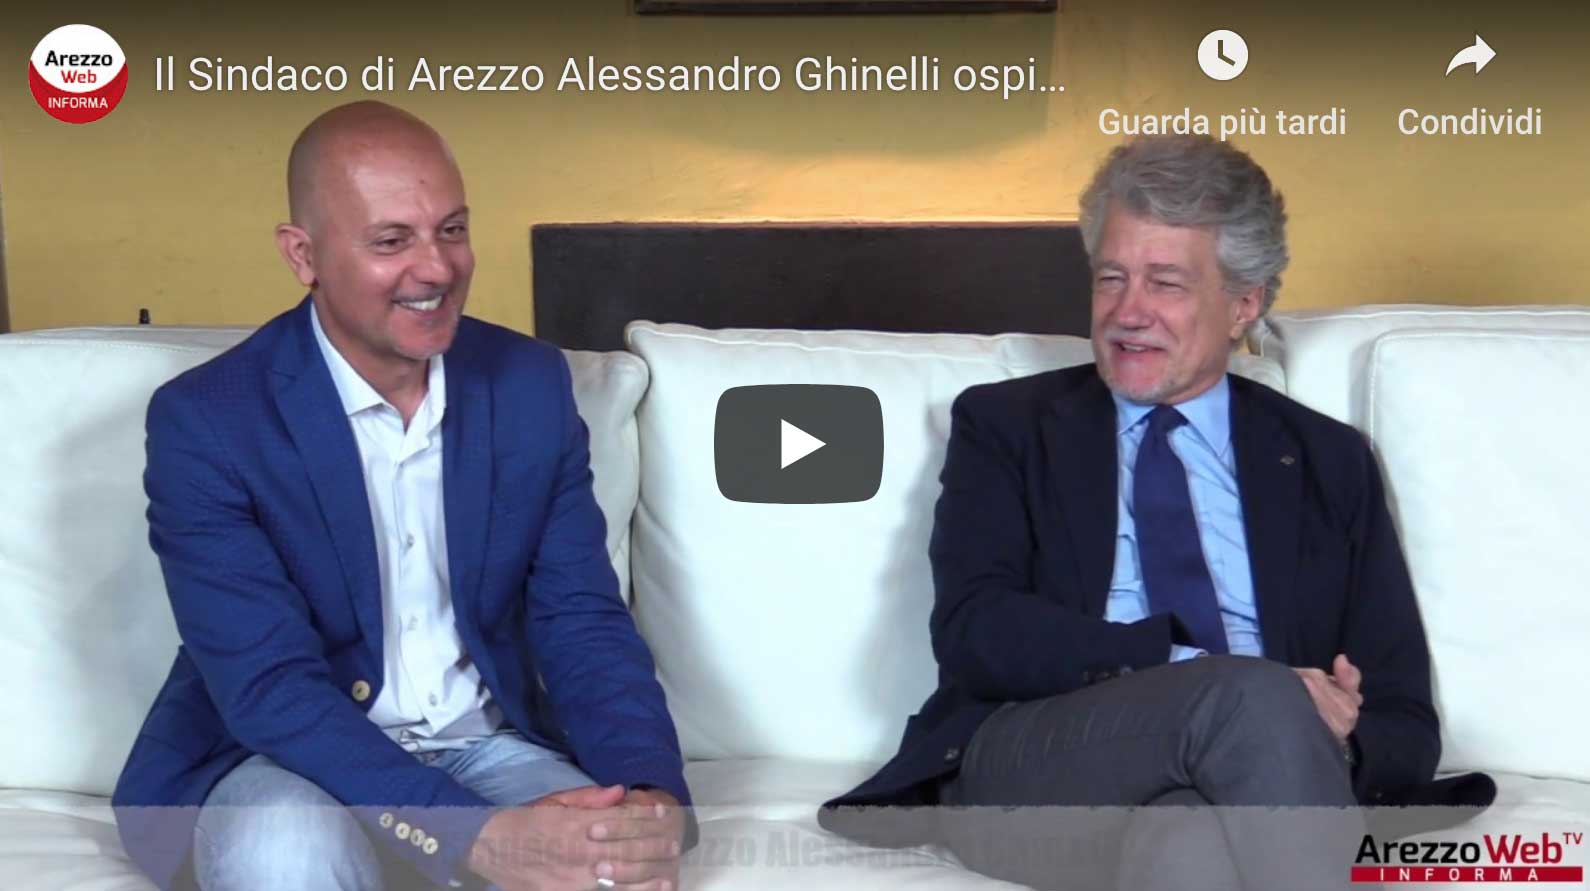 Il Sindaco di Arezzo Alessandro Ghinelli ospite a “UN ALTRO GIRO DI GIOSTRA”